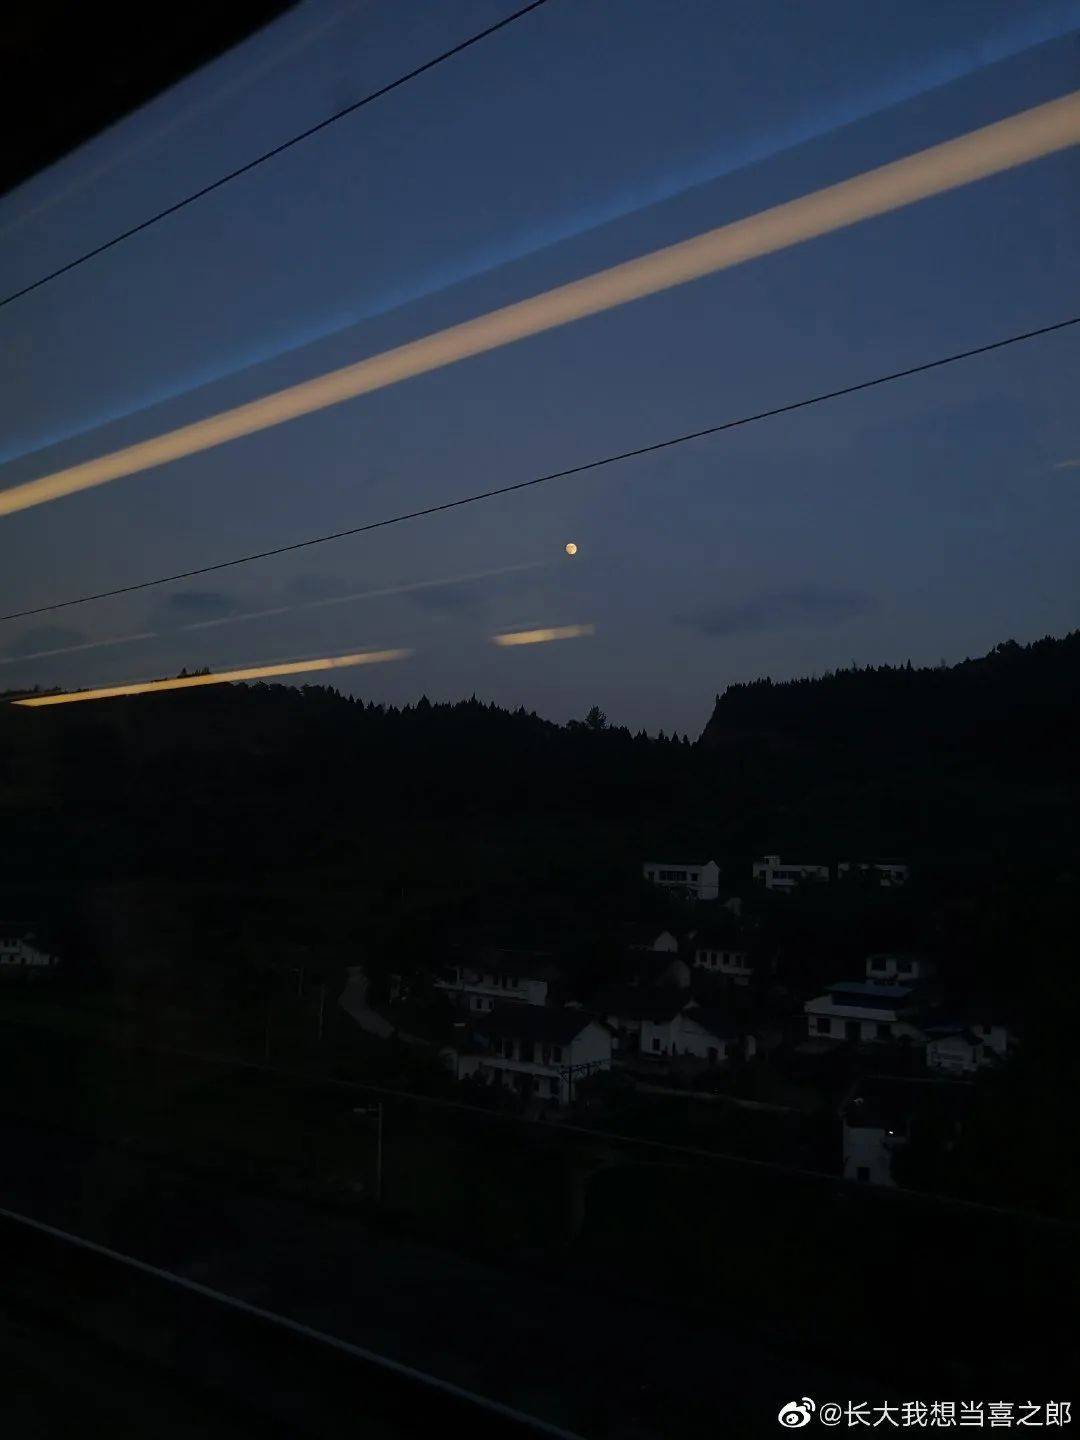 坐高铁看中国丨网友晒坐着火车拍月亮照片讲述火车故事